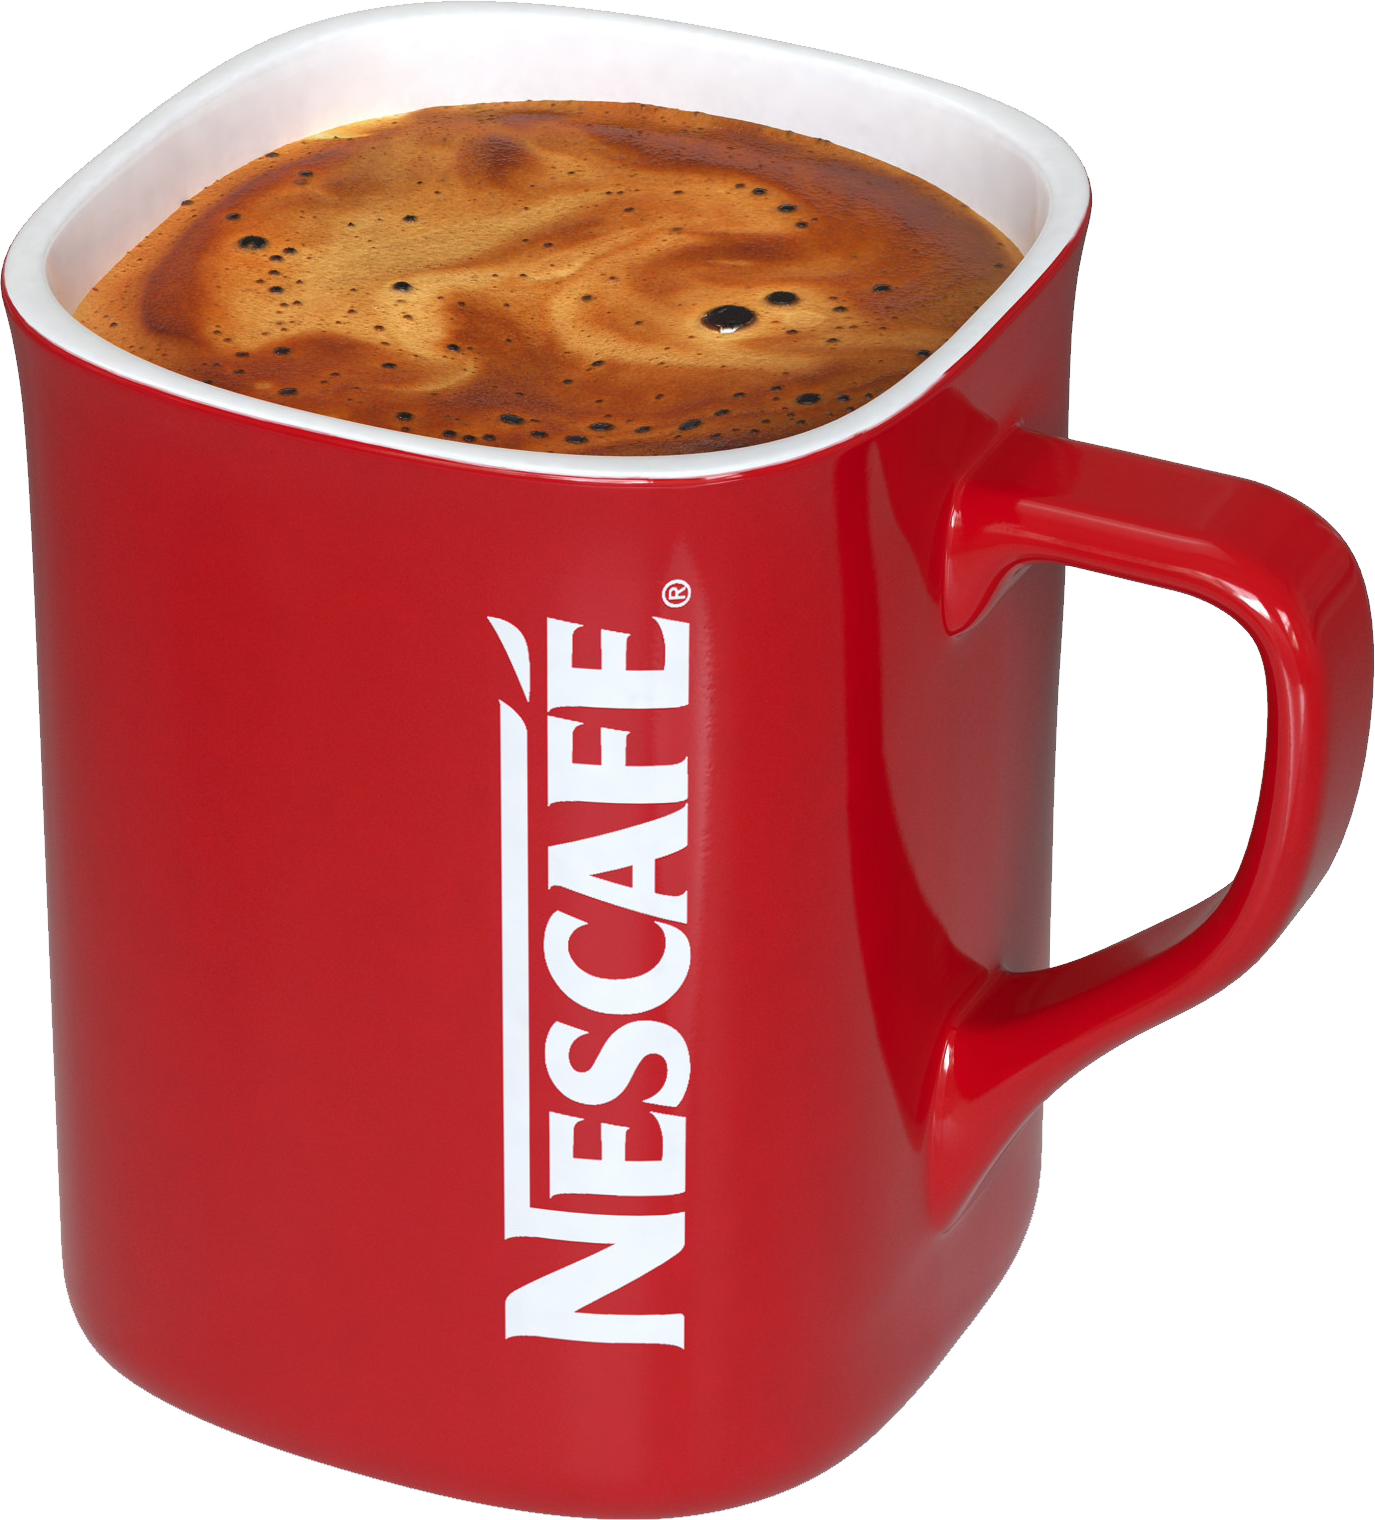 네스카페 레드컵 커피